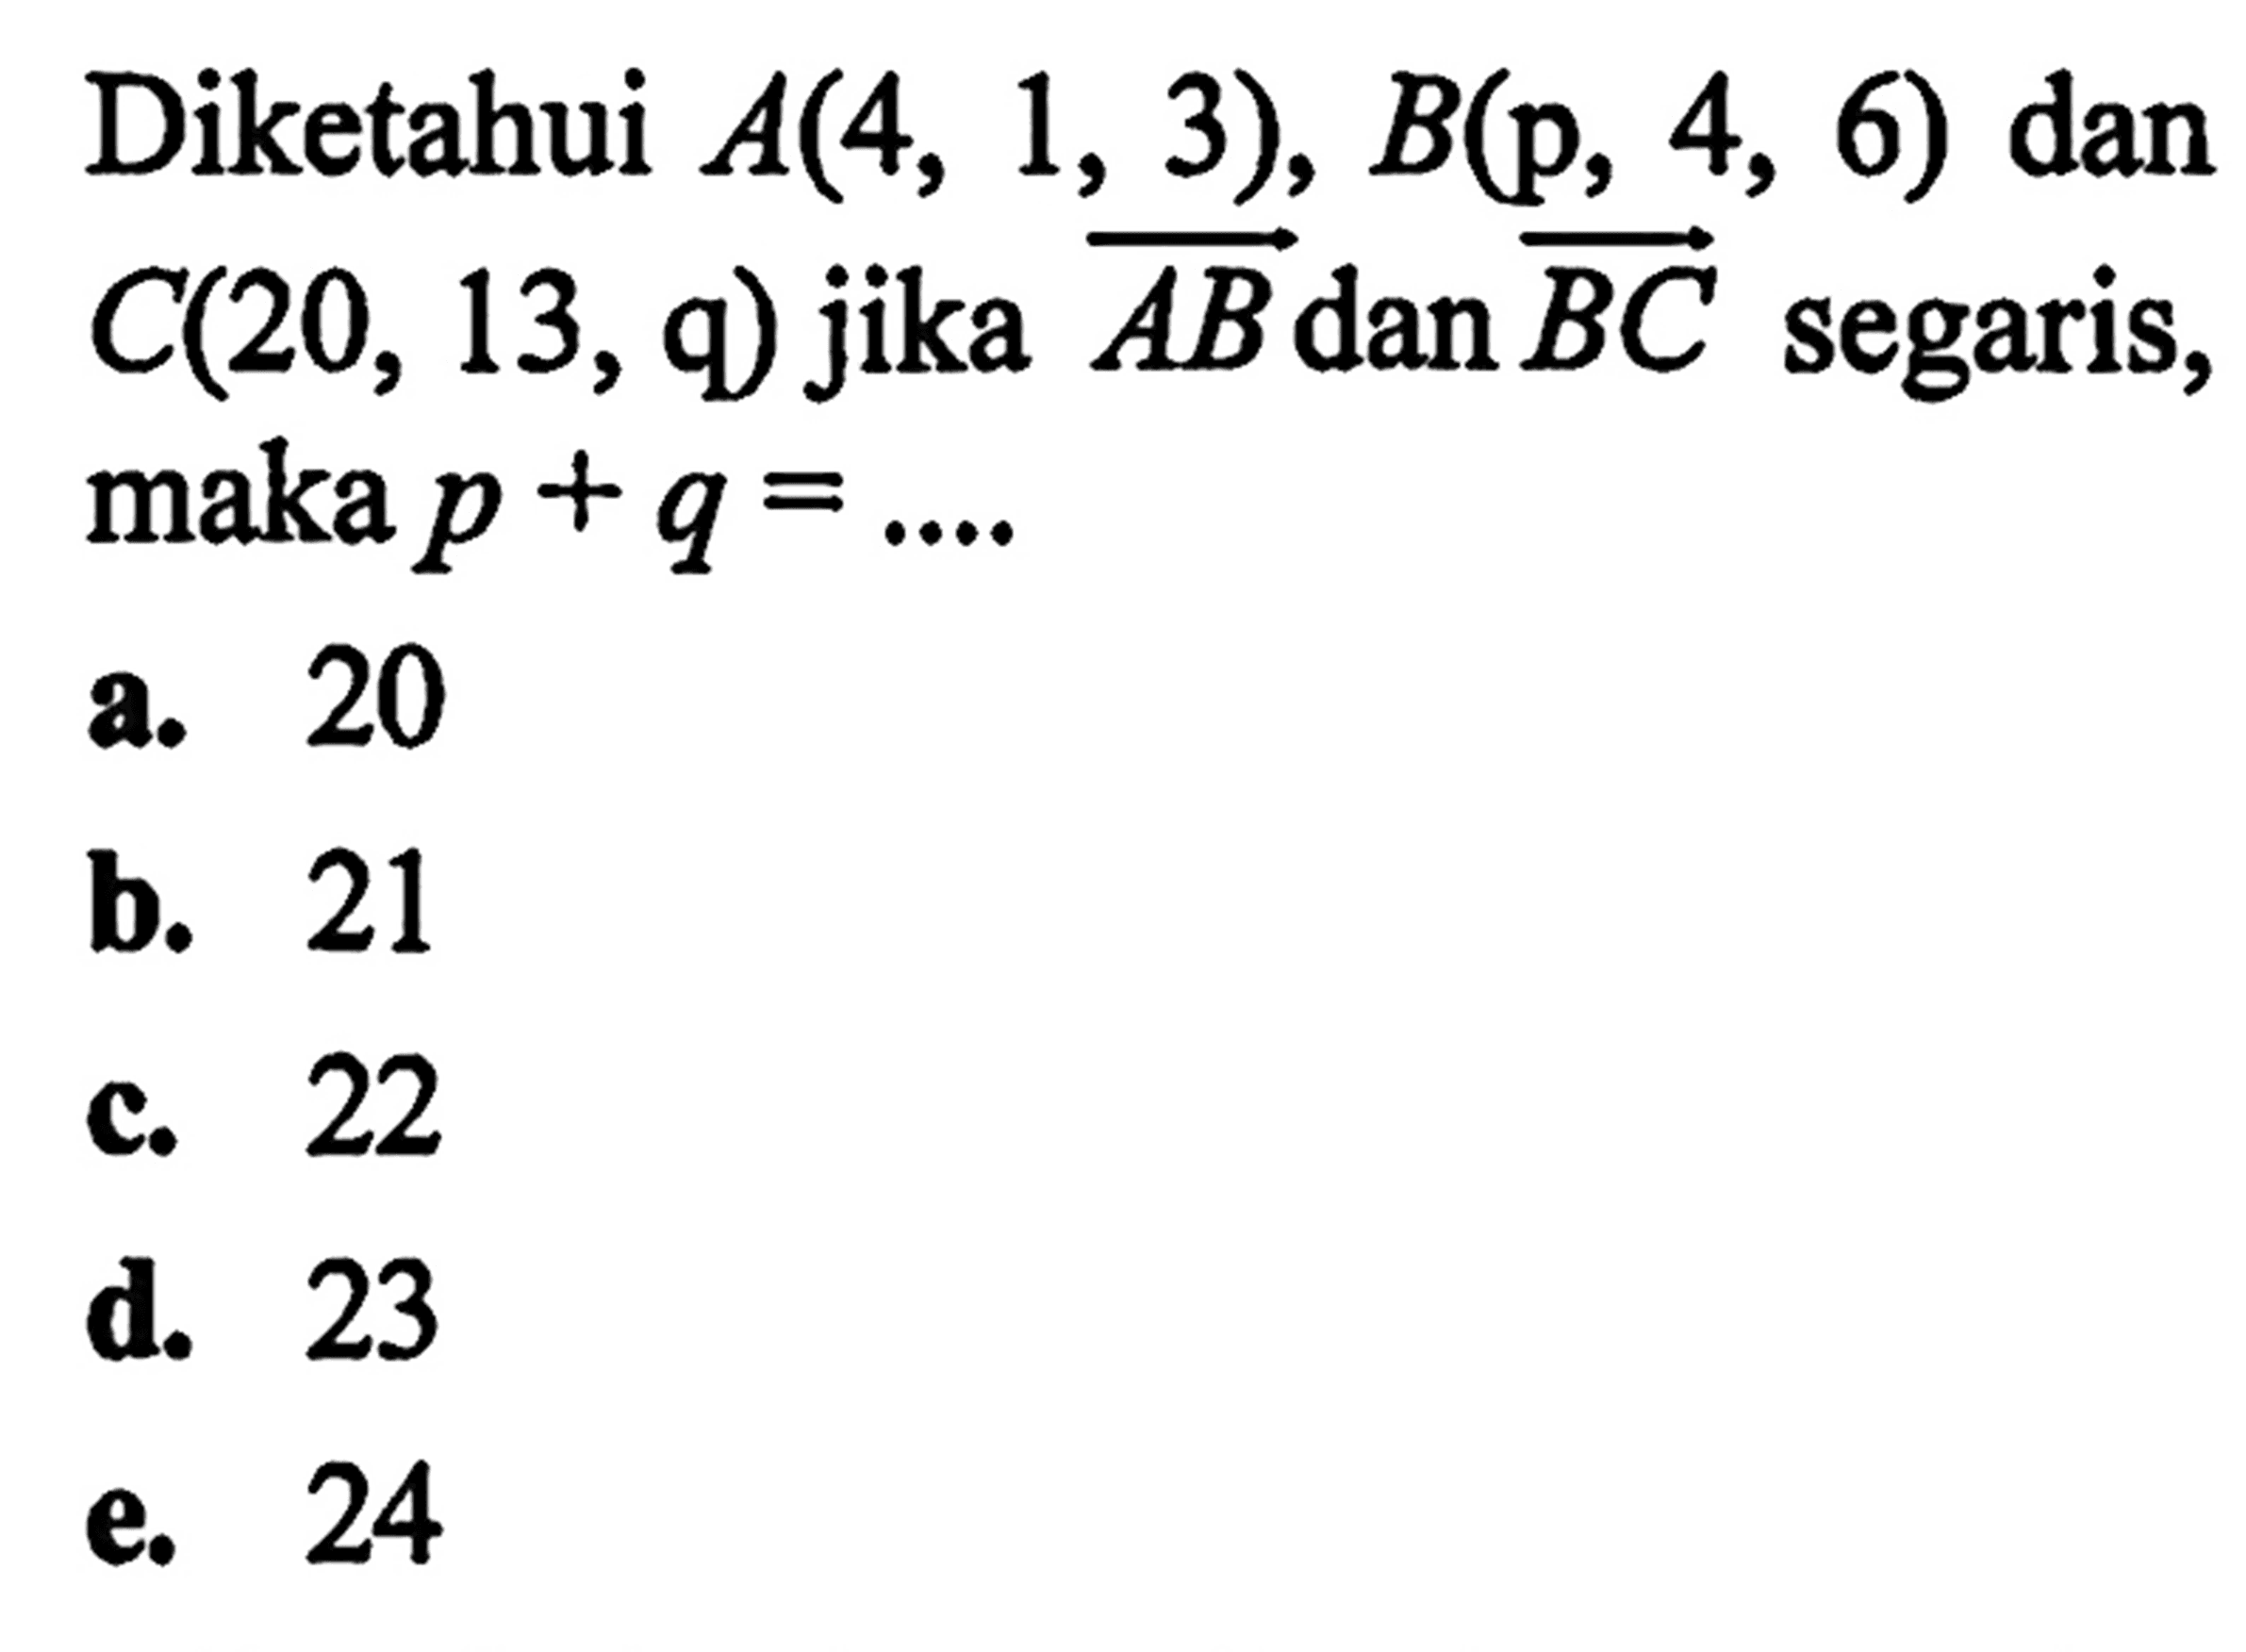 Diketahui A(4, 3), 6) dan B (p, 4, 6) dan C(20, 13,9) jika vektor AB dan vektor BC segaris, maka p + q = a. 20 b. 21 c. 22 d. 23 e.24